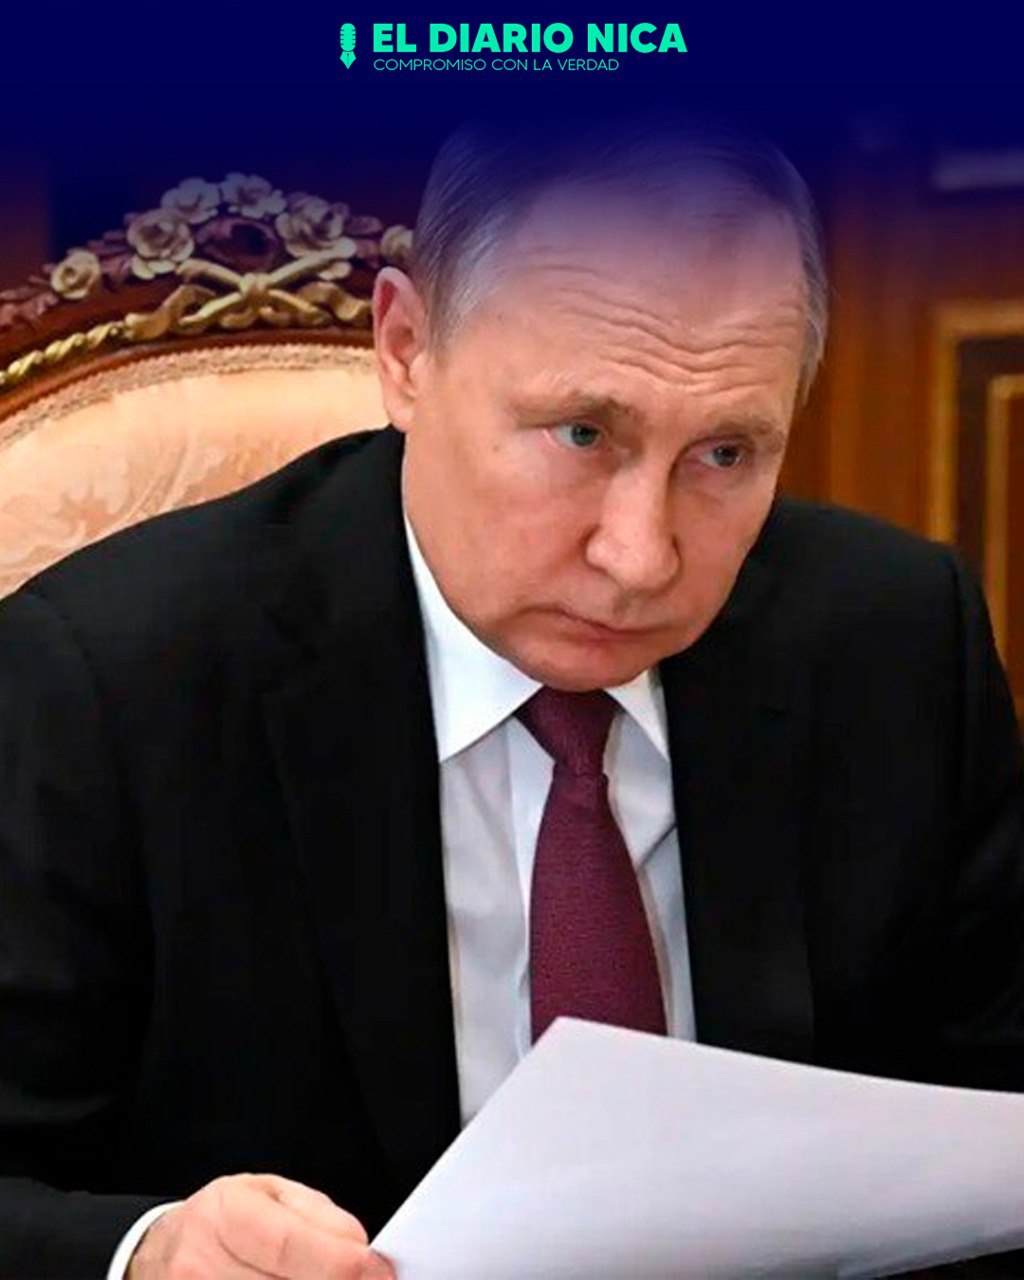 Rusia incluye nuevos países a lista inamistosa